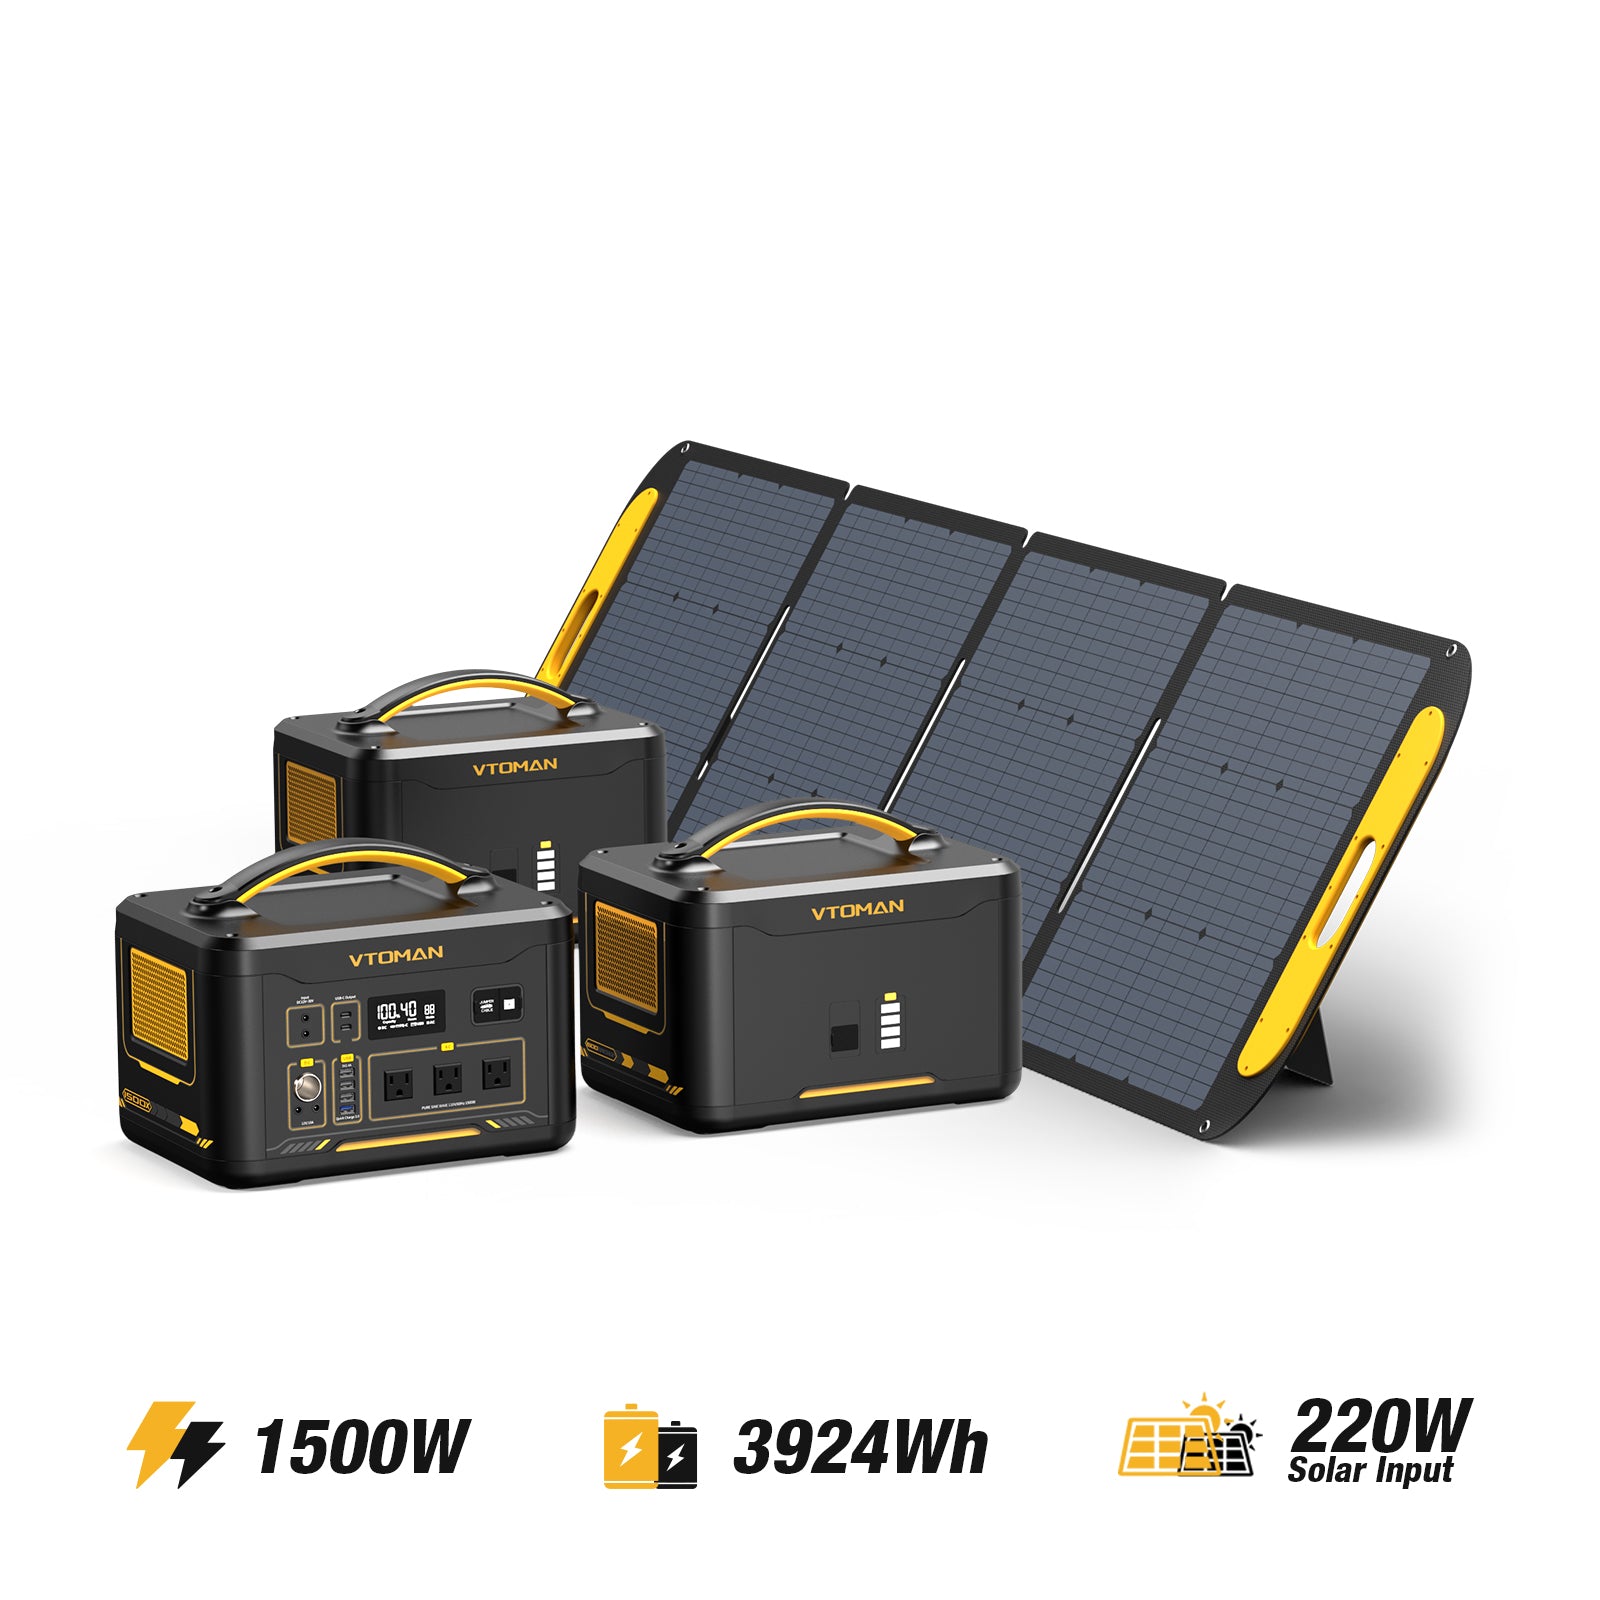 Générateur solaire Jump 1500W/3924Wh 220W